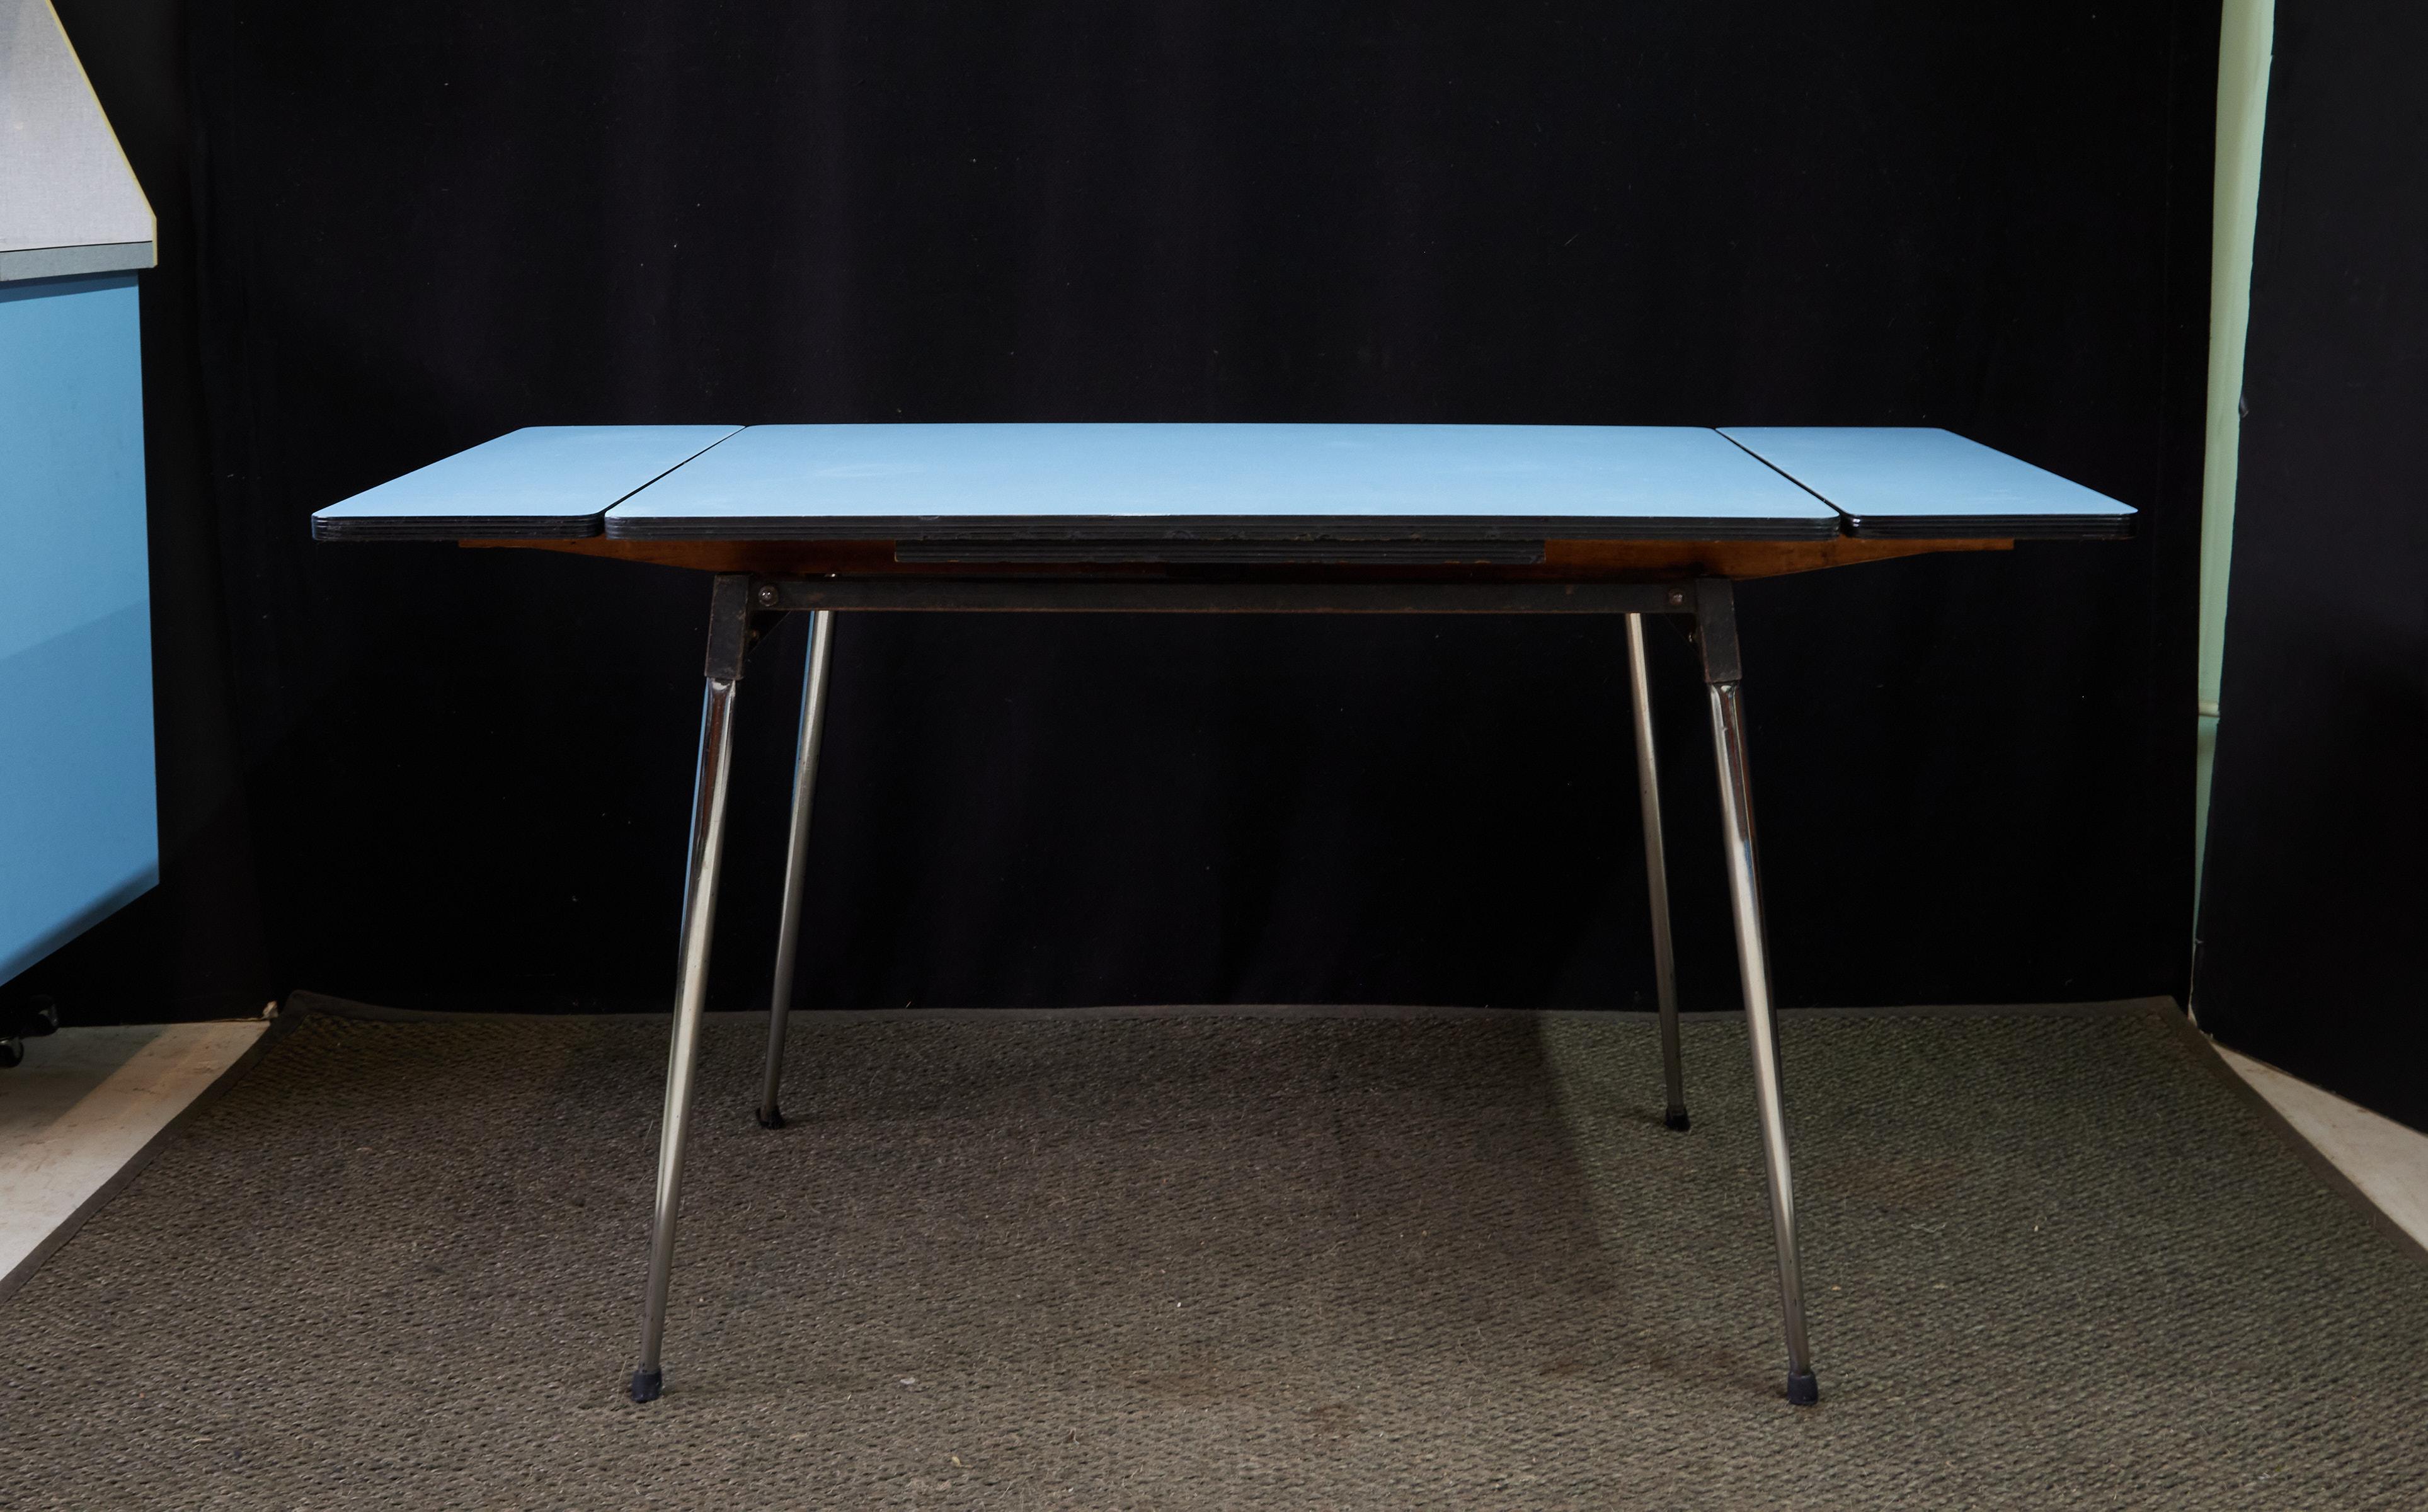 Kitchenette rétro française du milieu du siècle dans un audacieux formica bleu poudre de la marque SIF fabriqué dans les années 1950. Cet ensemble complet et emblématique comprend une armoire, une table de cuisine extensible et six chaises